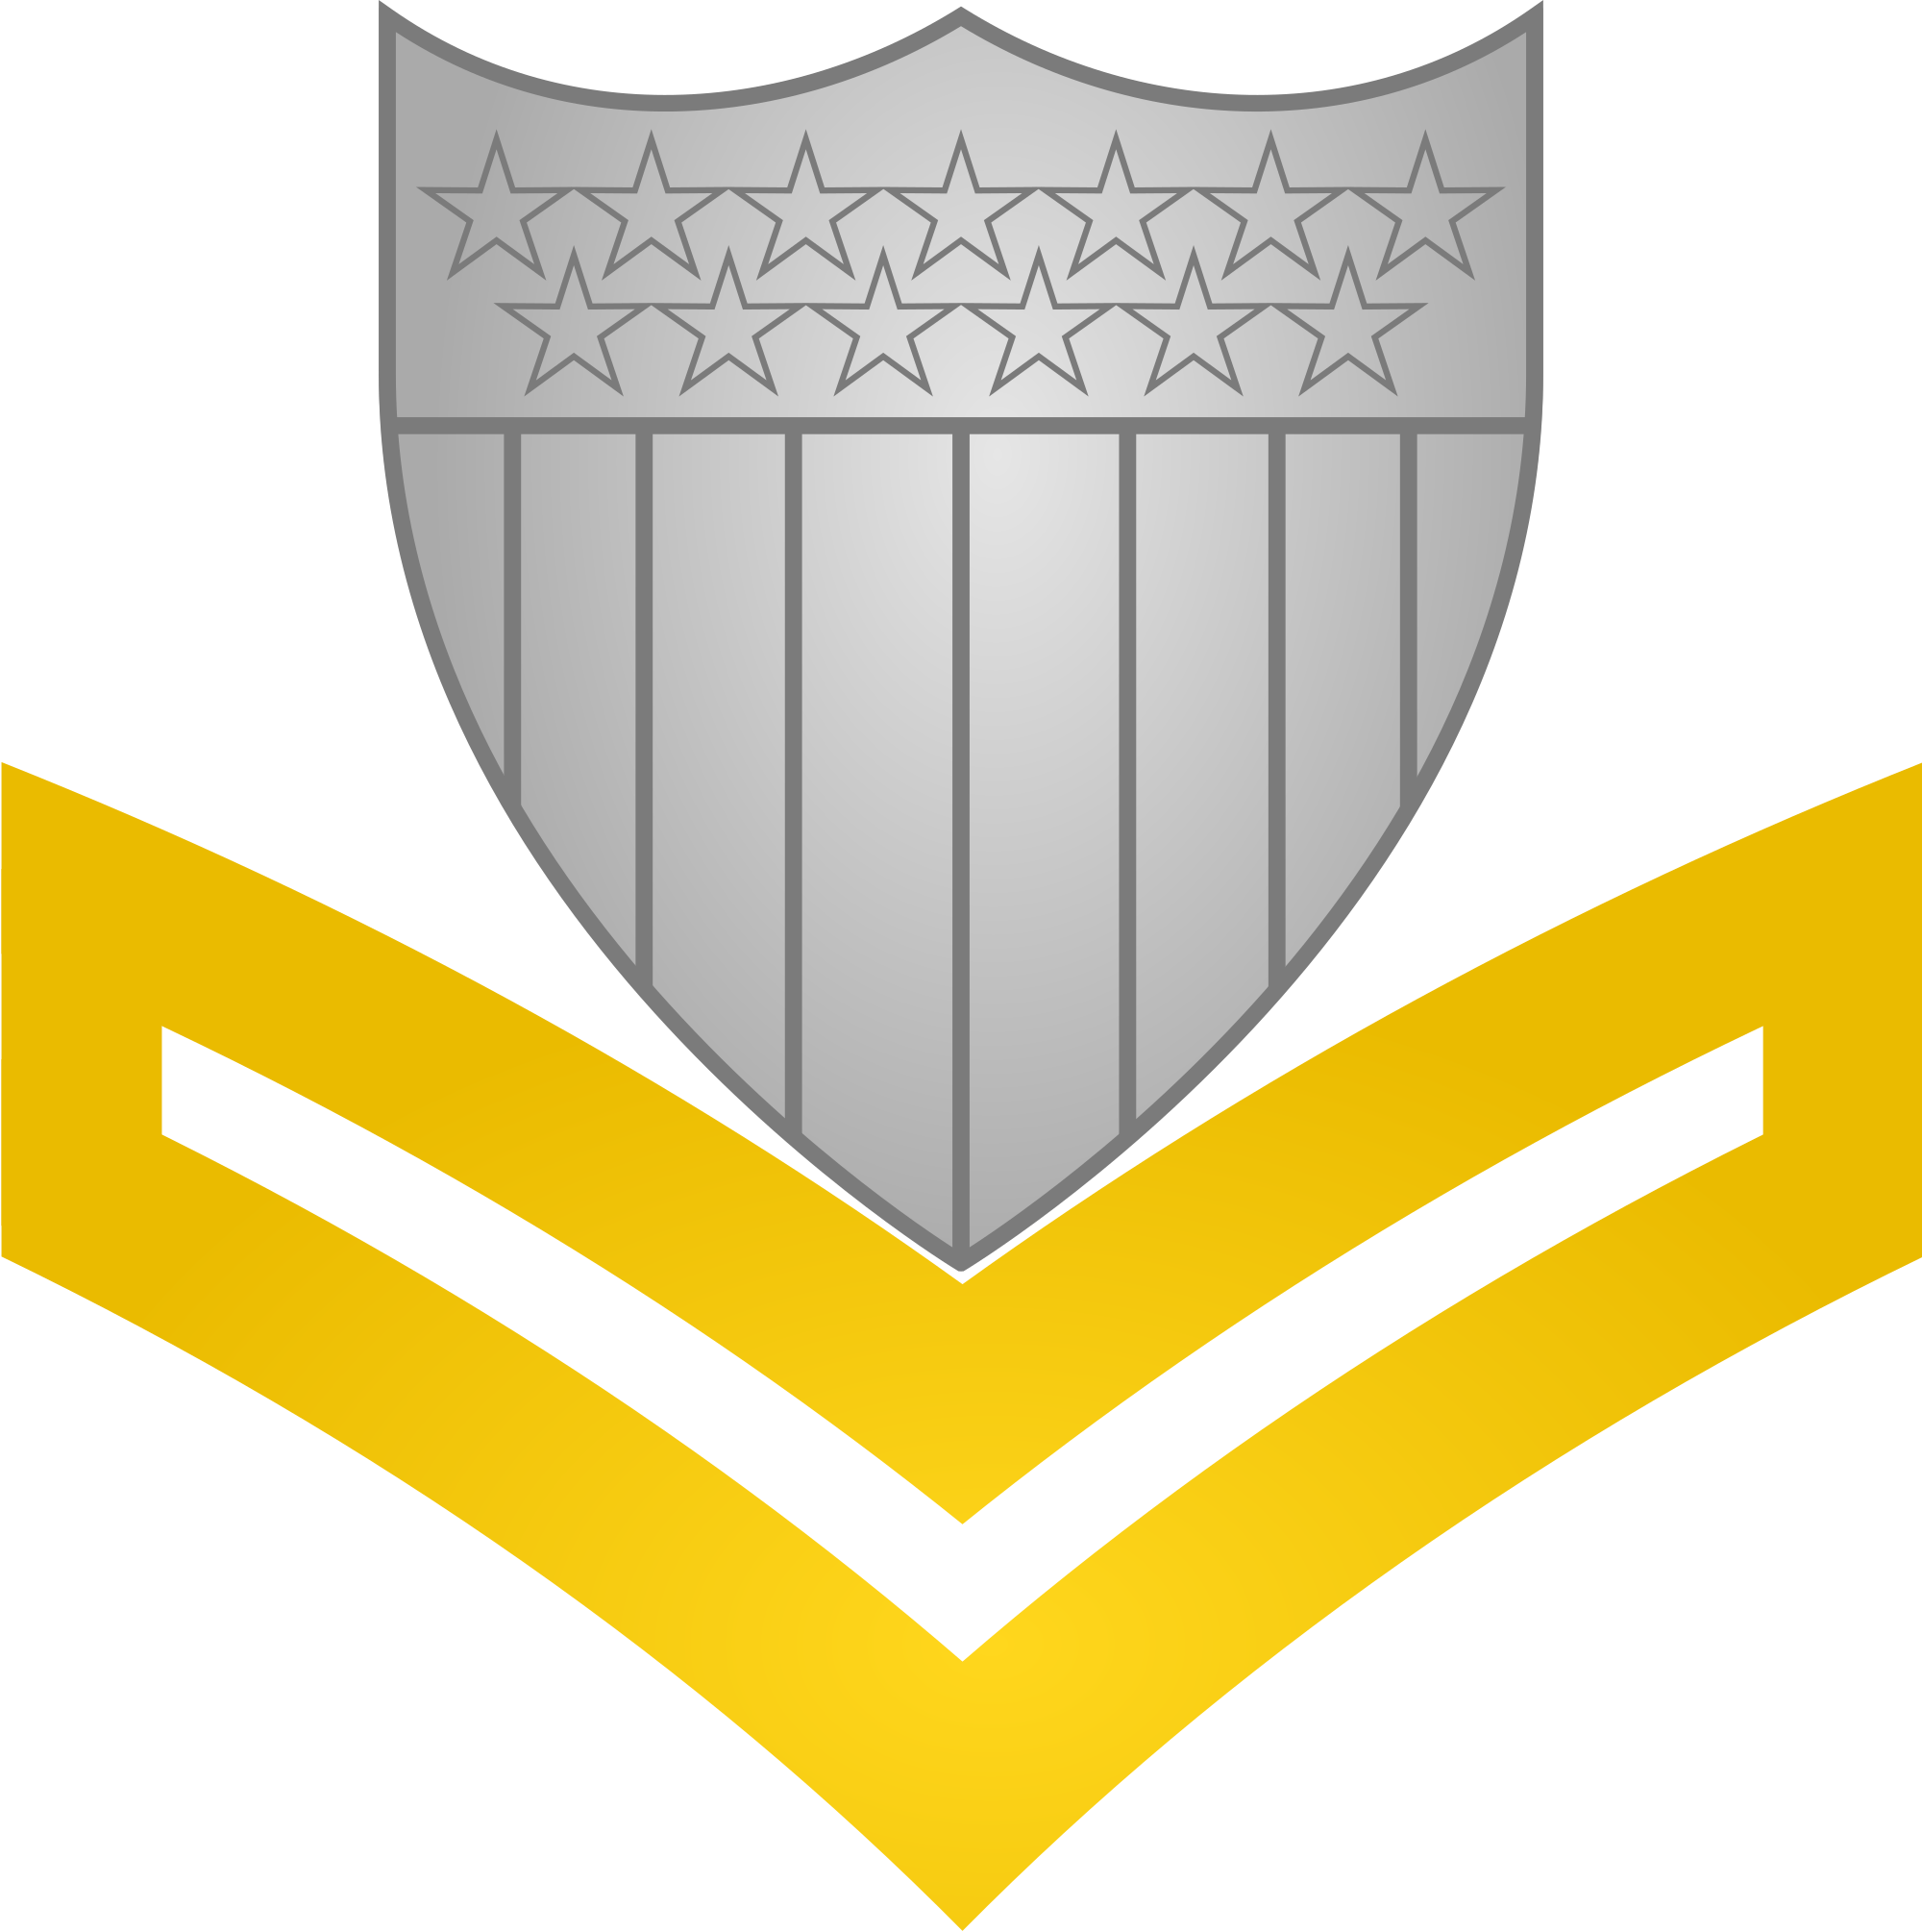 Open - Petty Officer Third Class (2000x2010)